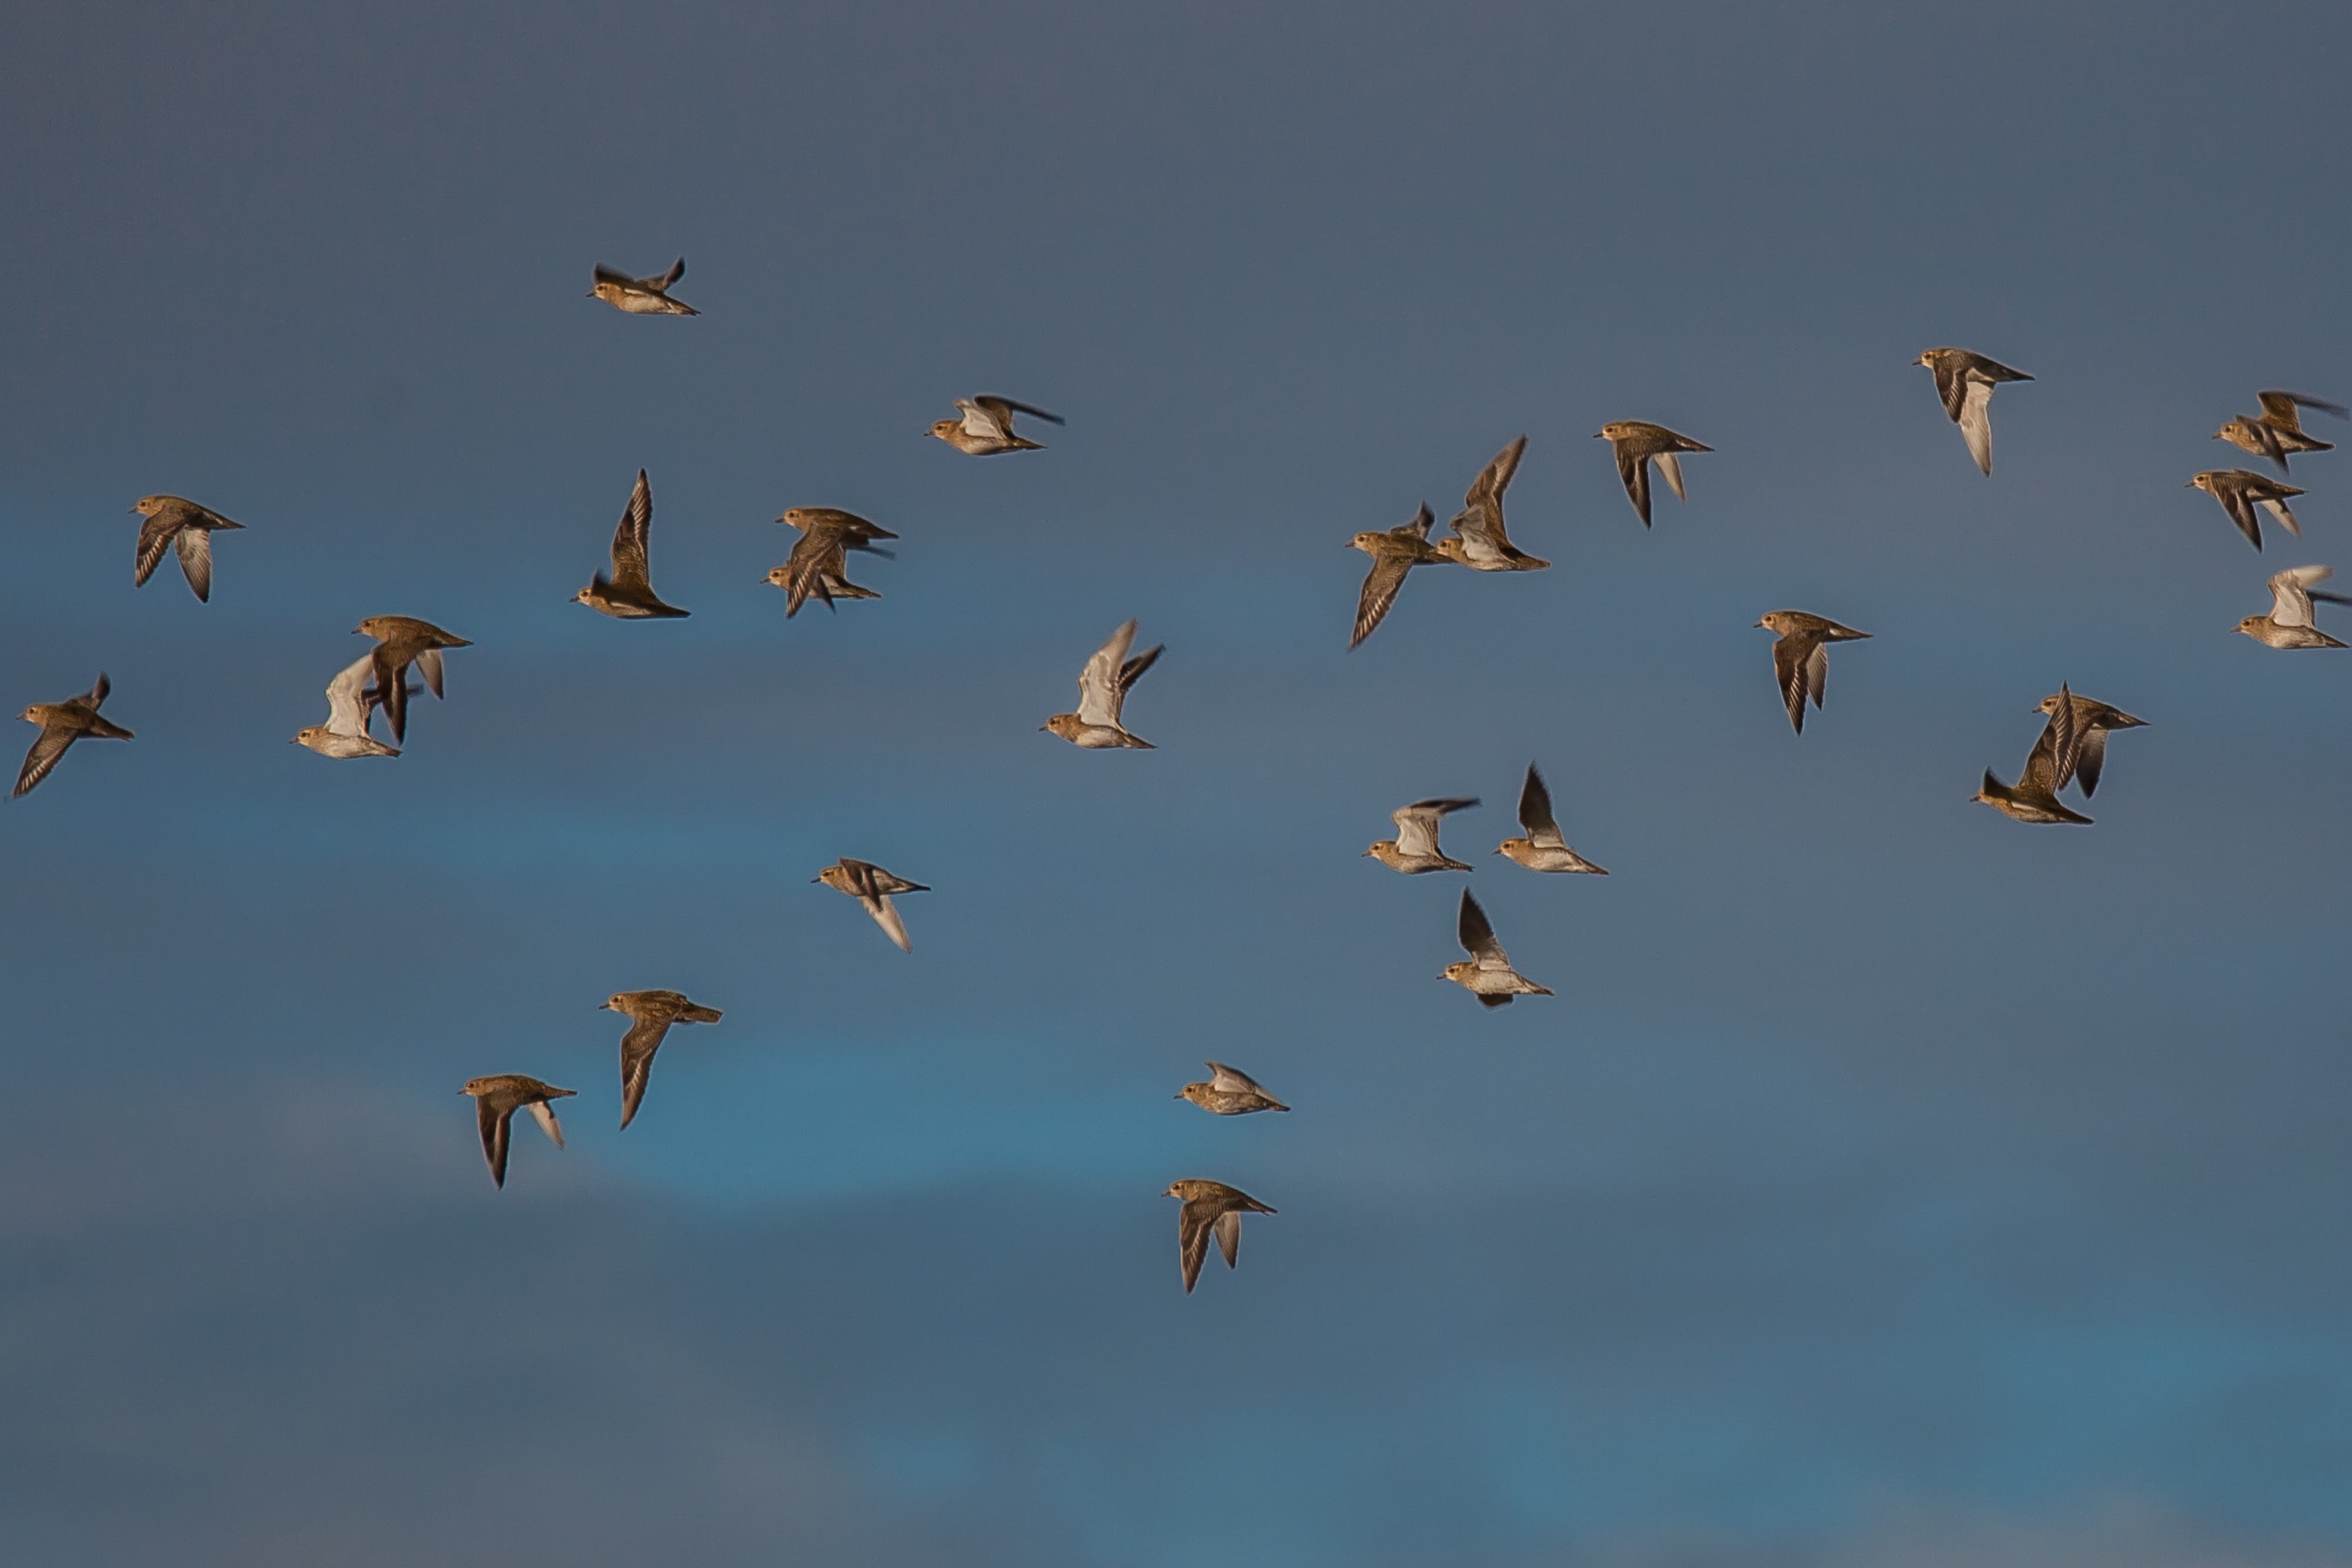 Une vingtaine d'oiseaux au pelage marron clair volent dans le ciel.